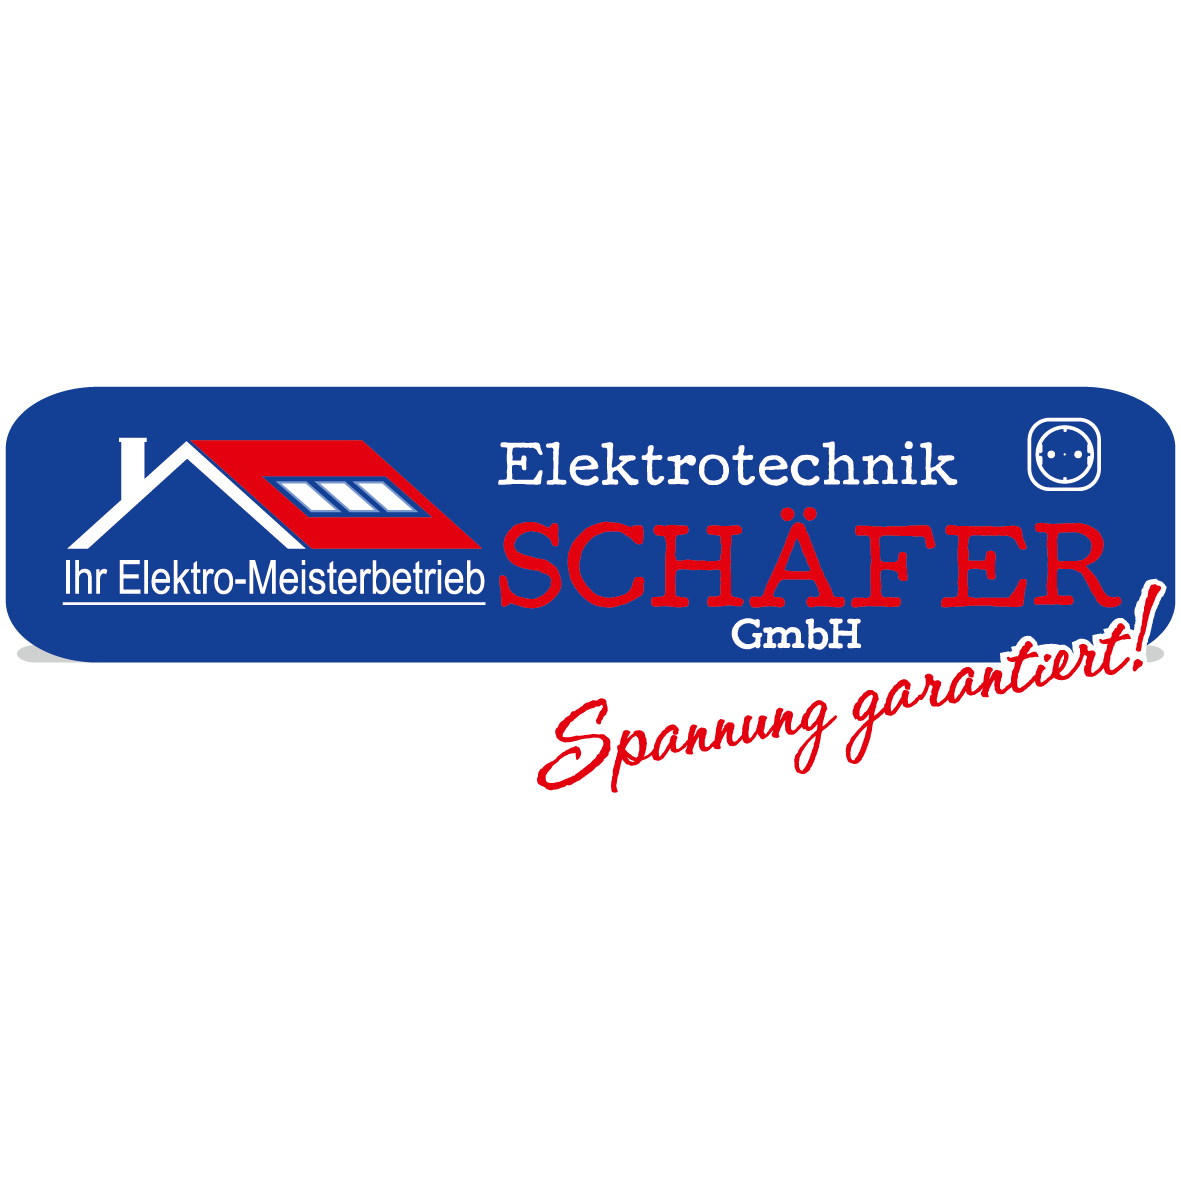 Elektrotechnik Schäfer GmbH  